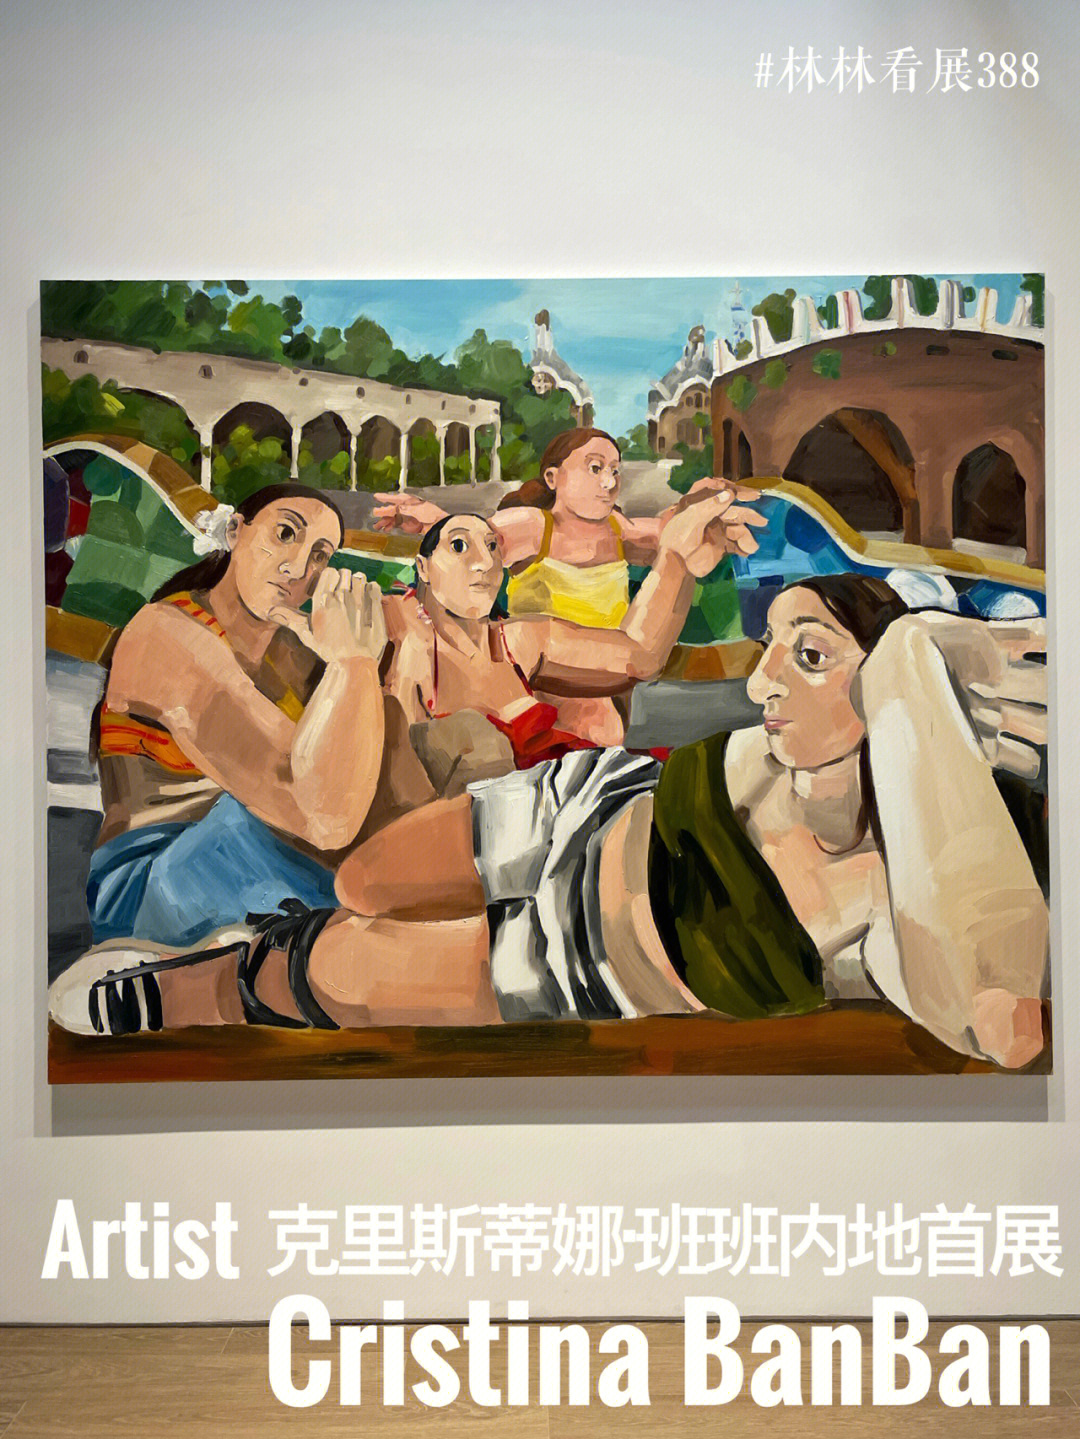 上海贝浩登画廊在节前开展了西班牙裔纽约艺术家克里斯蒂娜·班班的